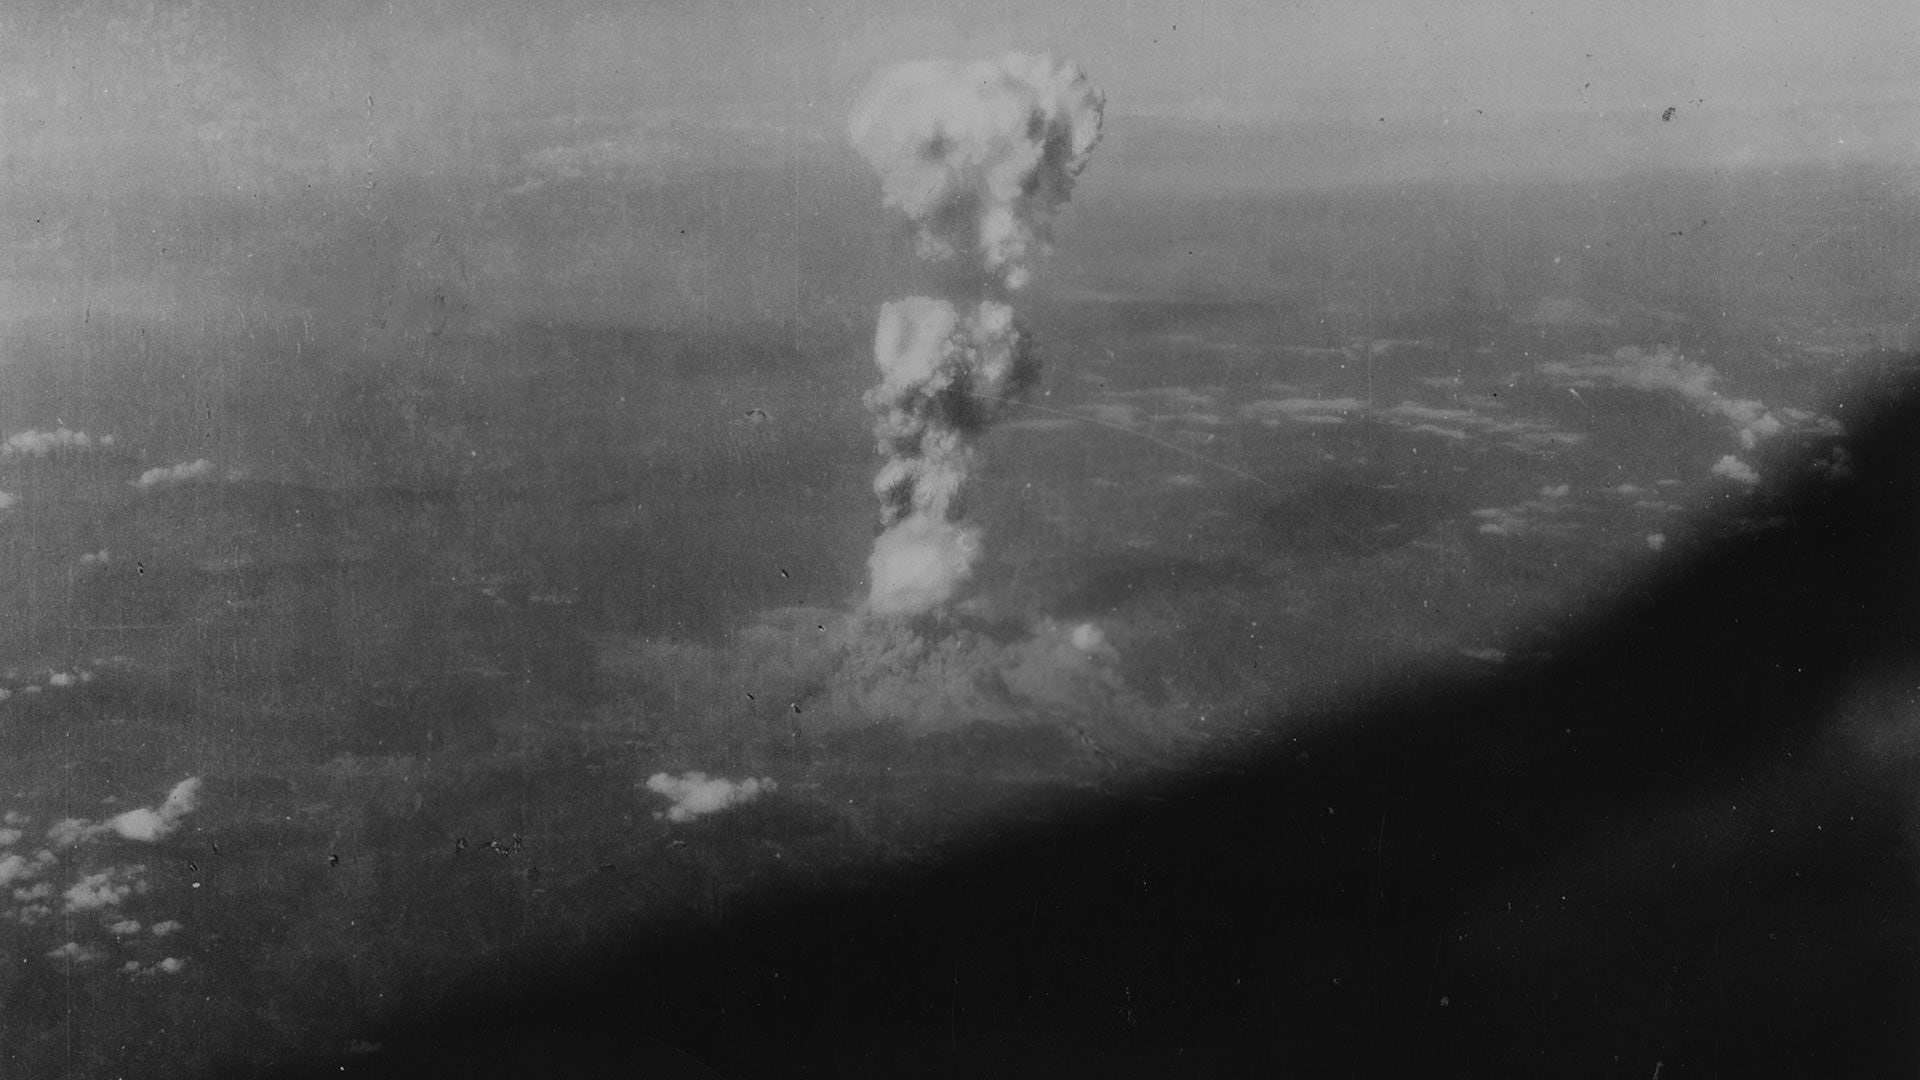 La bomba nuclear lanzada por Estados Unidos sobre Hiroshima el 6 de agosto de 1945 provocó 80 mil muertos en un solo segundo. Tres días después, otra bomba y otra ciudad japonesa destruida en un instante: Nagasaki (Getty Images)